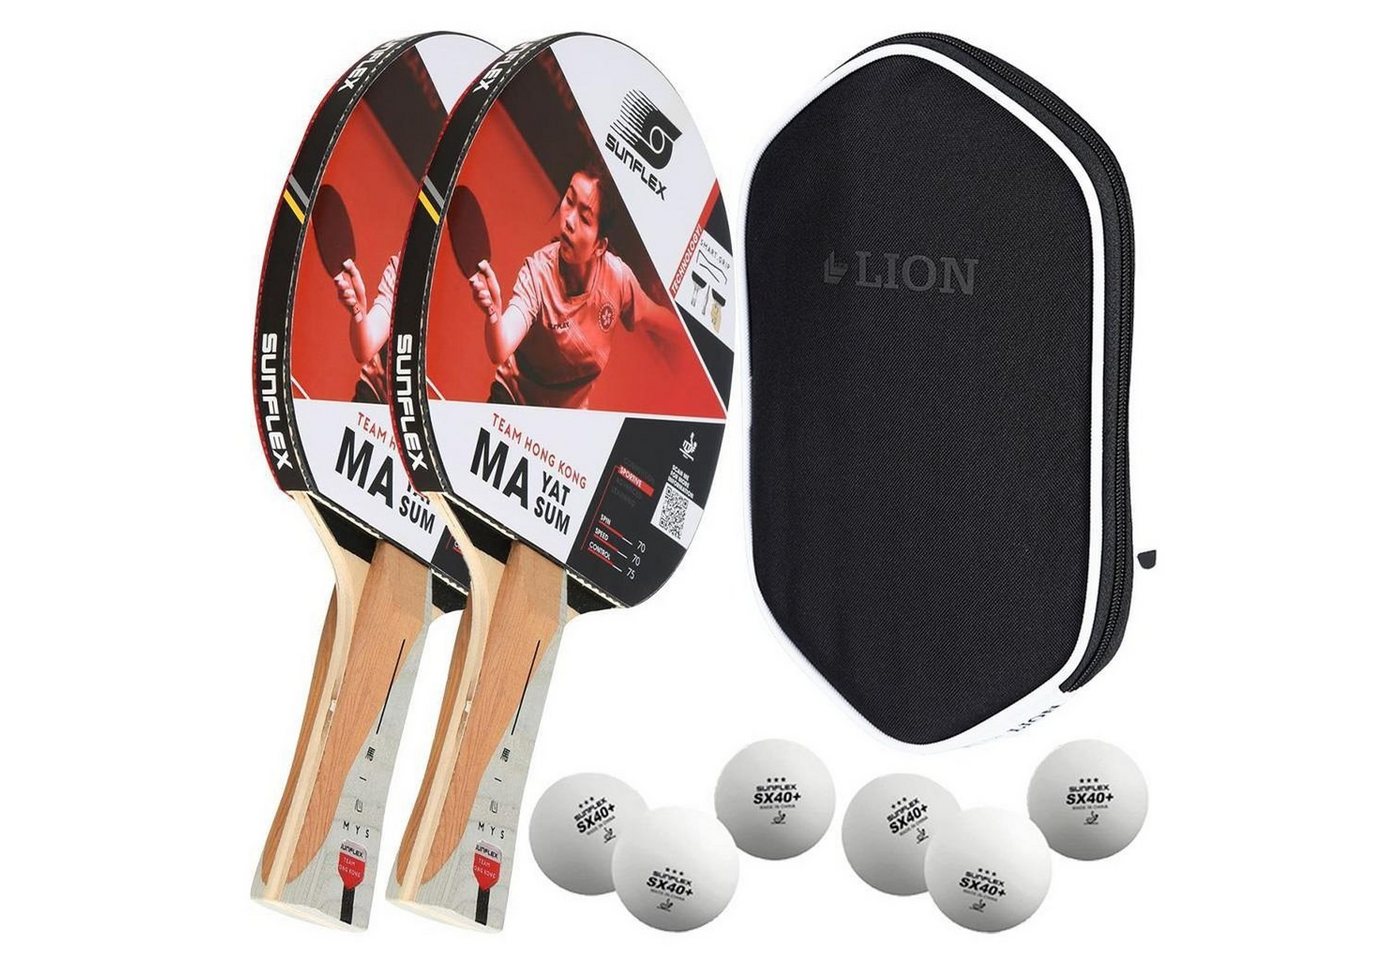 Sunflex Tischtennisschläger 2x MA YAT SUM + Tischtennishülle + 6x SX+ Bälle, Tischtennis Schläger Set Tischtennisset Table Tennis Bat Racket von Sunflex